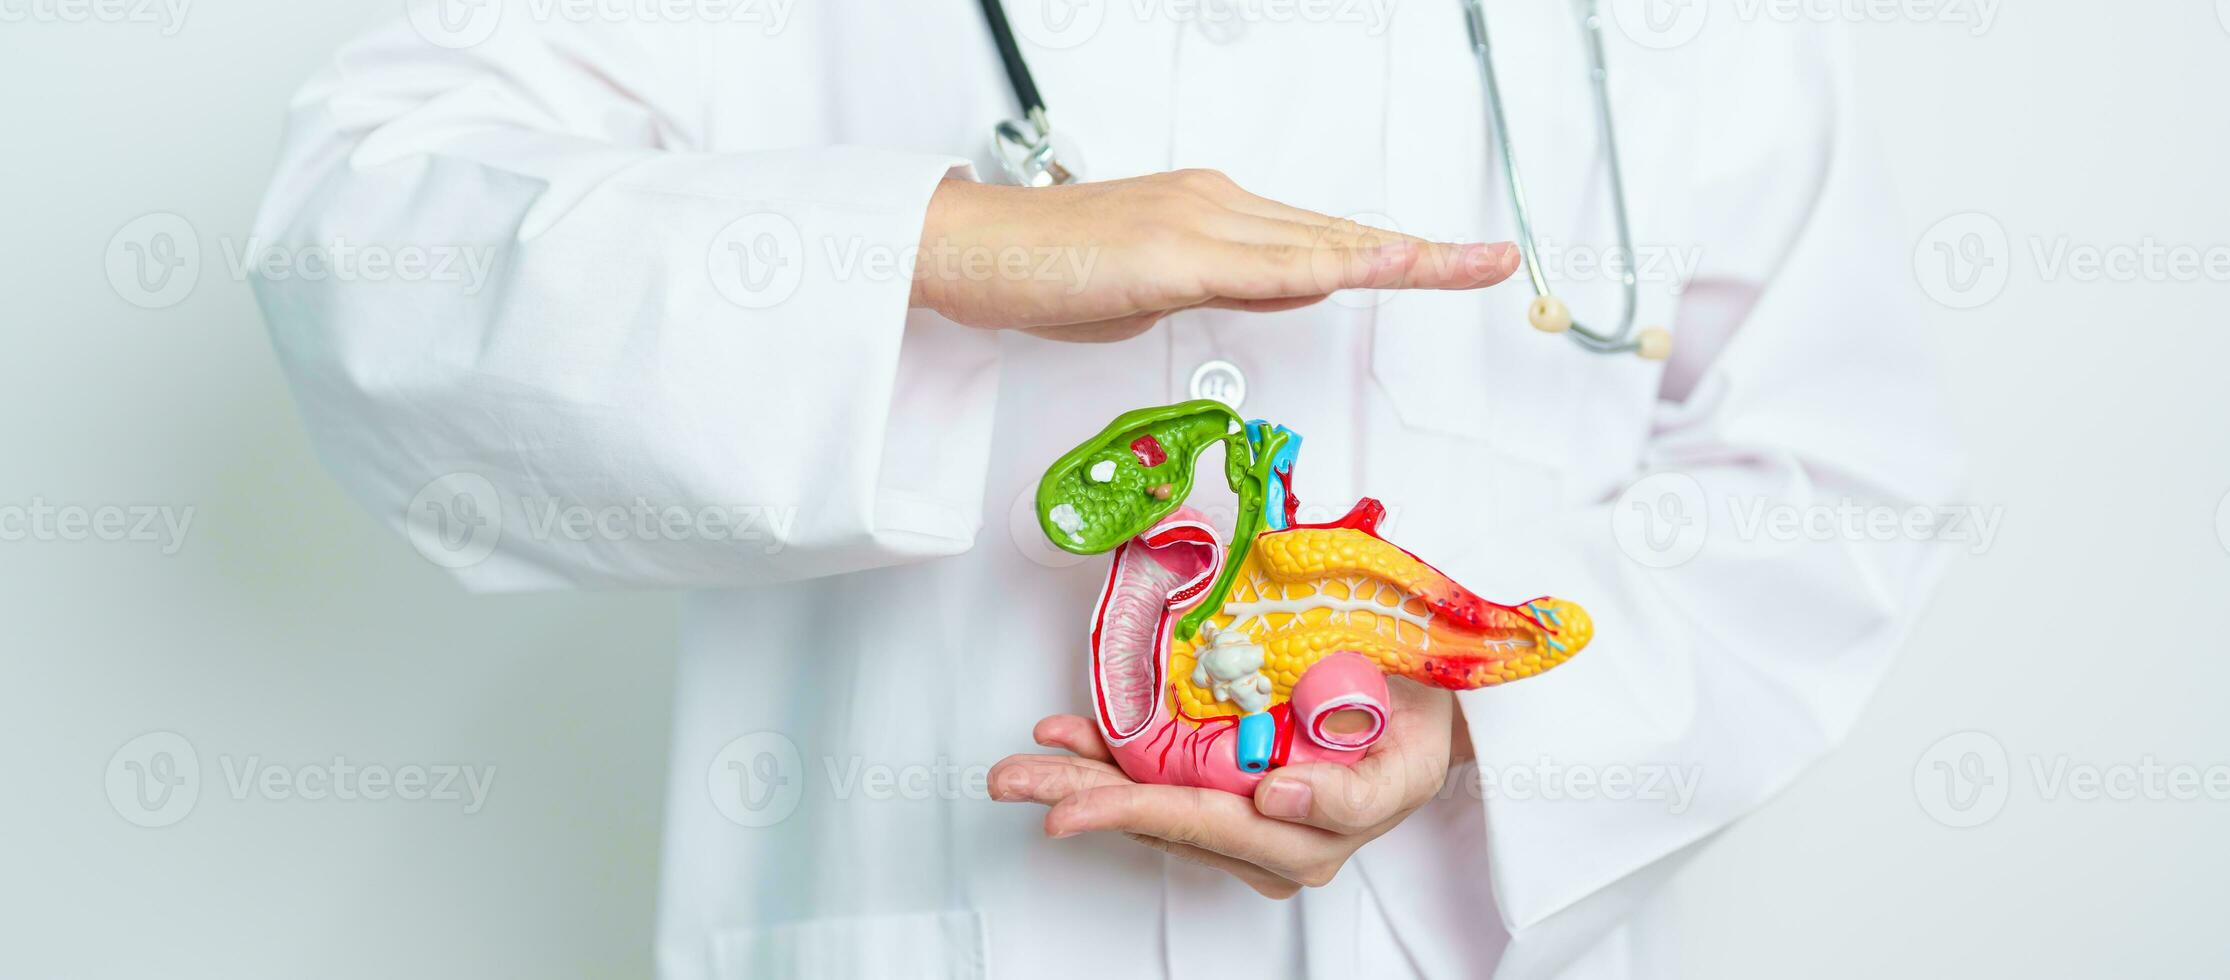 médico con humano pancreatitis anatomía modelo con páncreas, vesícula biliar, bilis conducto, duodeno, pequeño intestino. pancreático cáncer, agudo y crónico pancreatitis, digestivo sistema y salud concepto foto